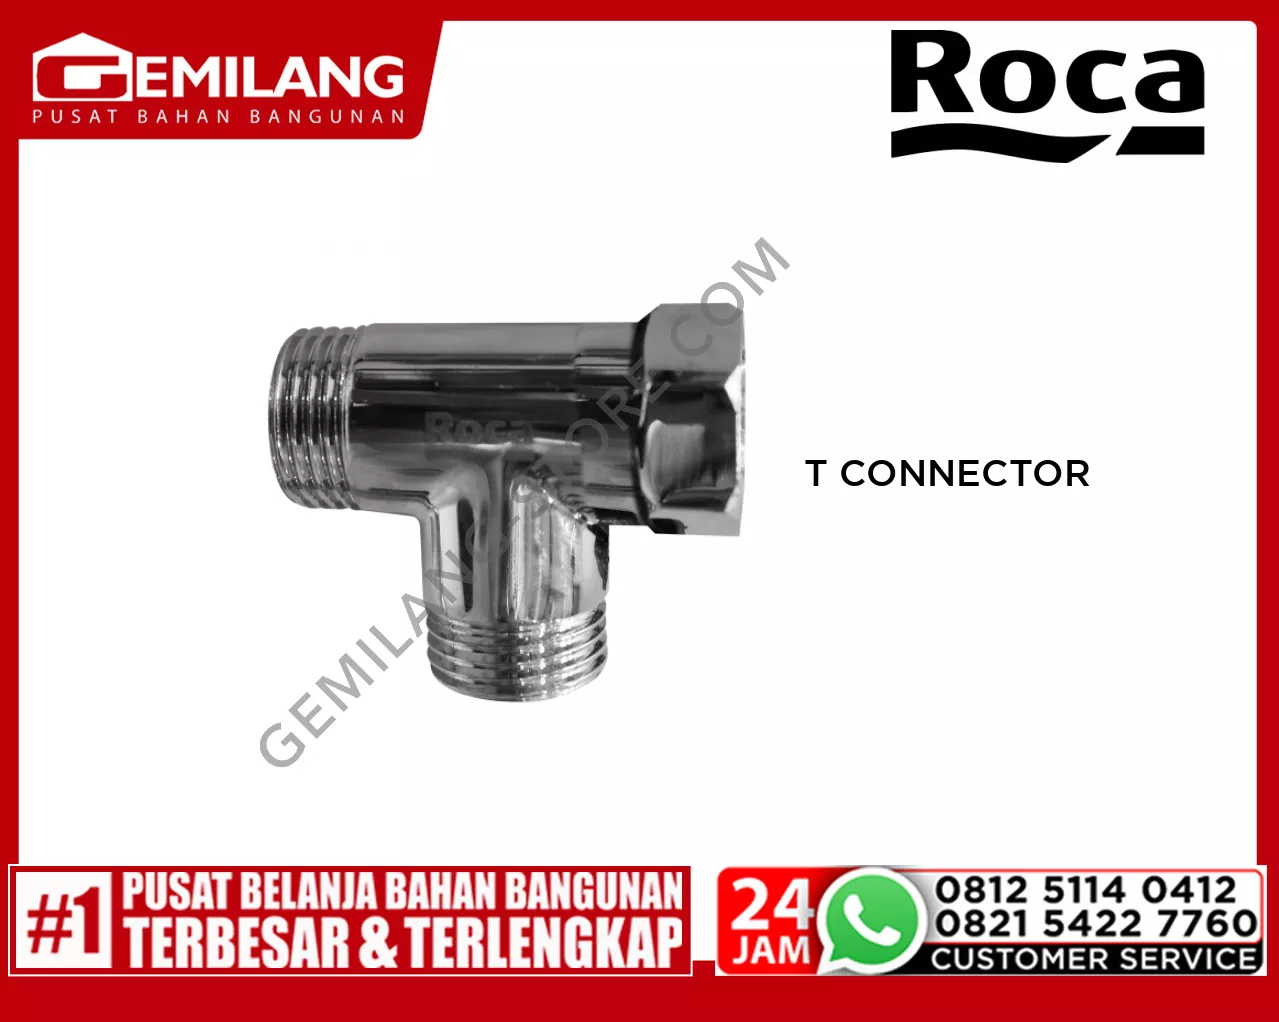 ROCA T CONNECTOR FRCSF-00-A52515980V